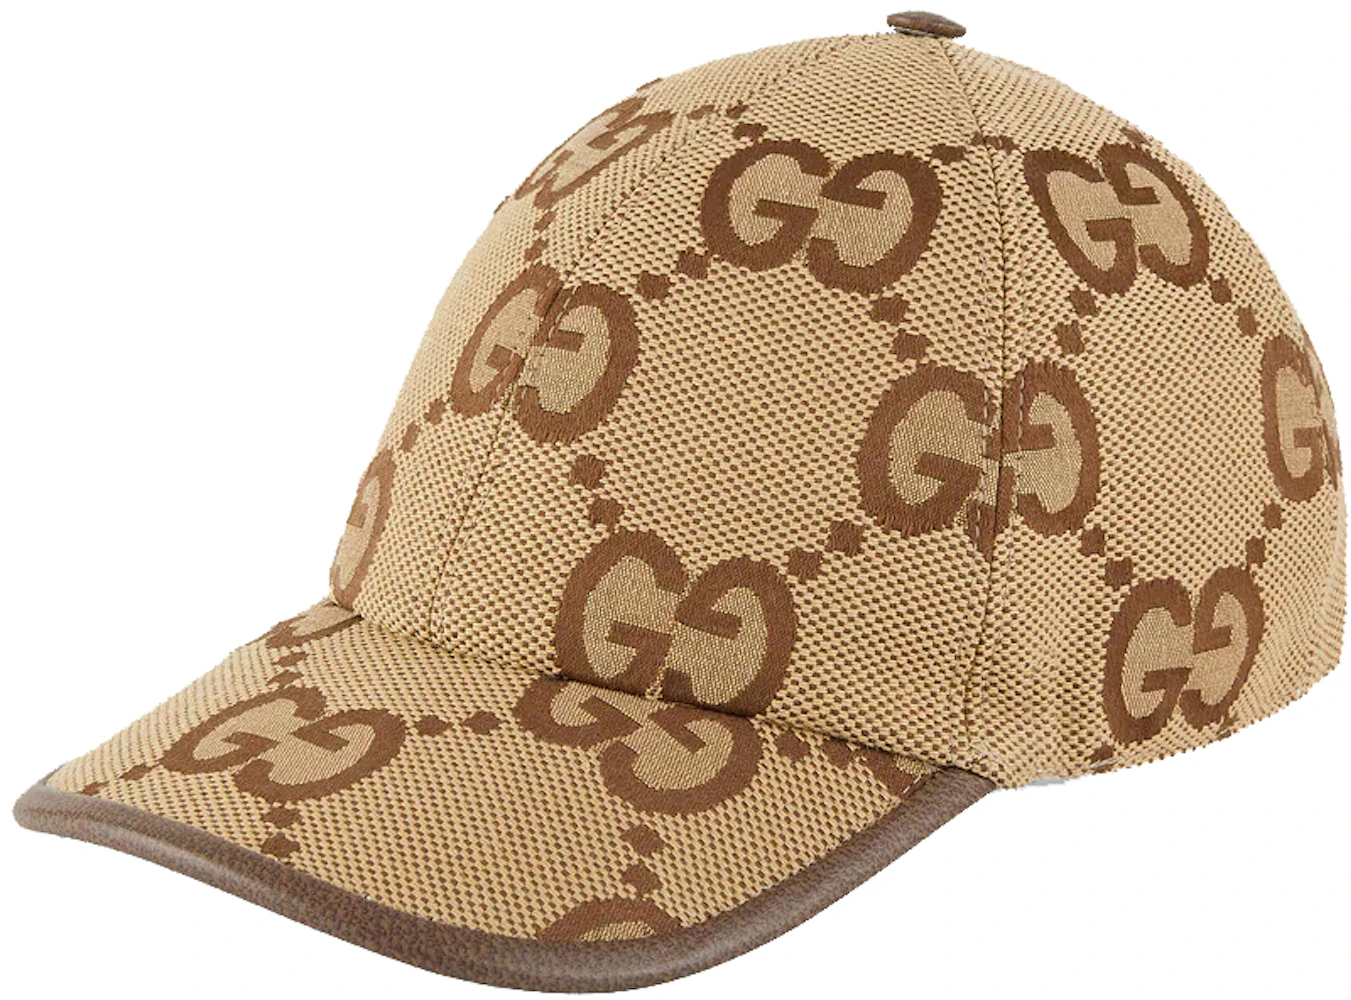 Children's Original GG canvas hat